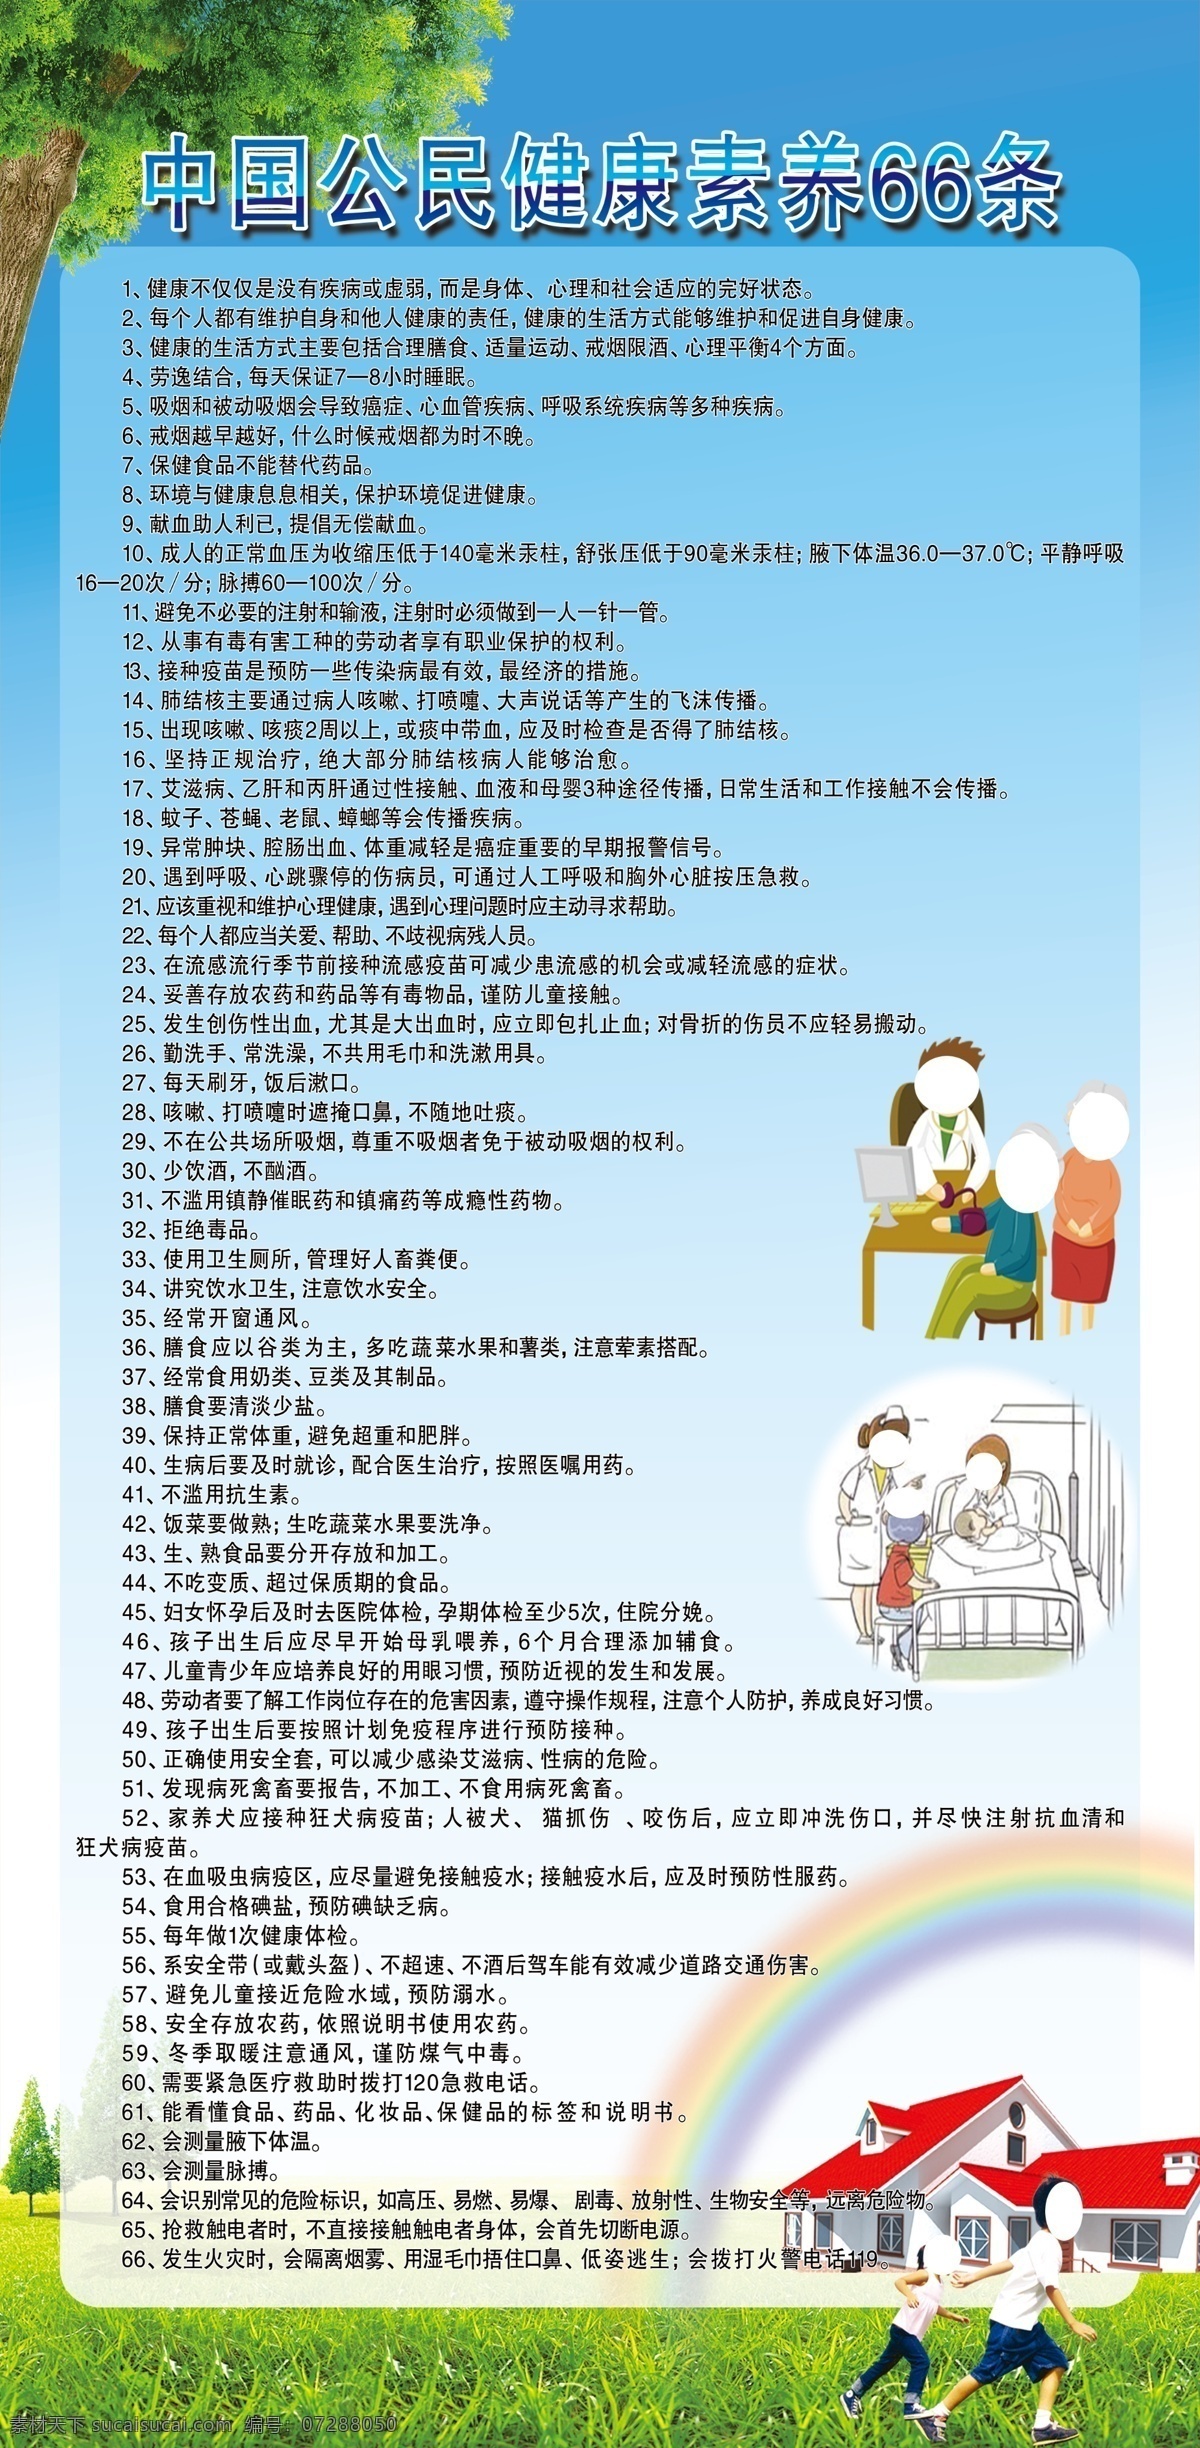 健康教育展板 中国公民素养 素养66条 素养 条 展架 海报 健康教育 宣传栏 移门图案